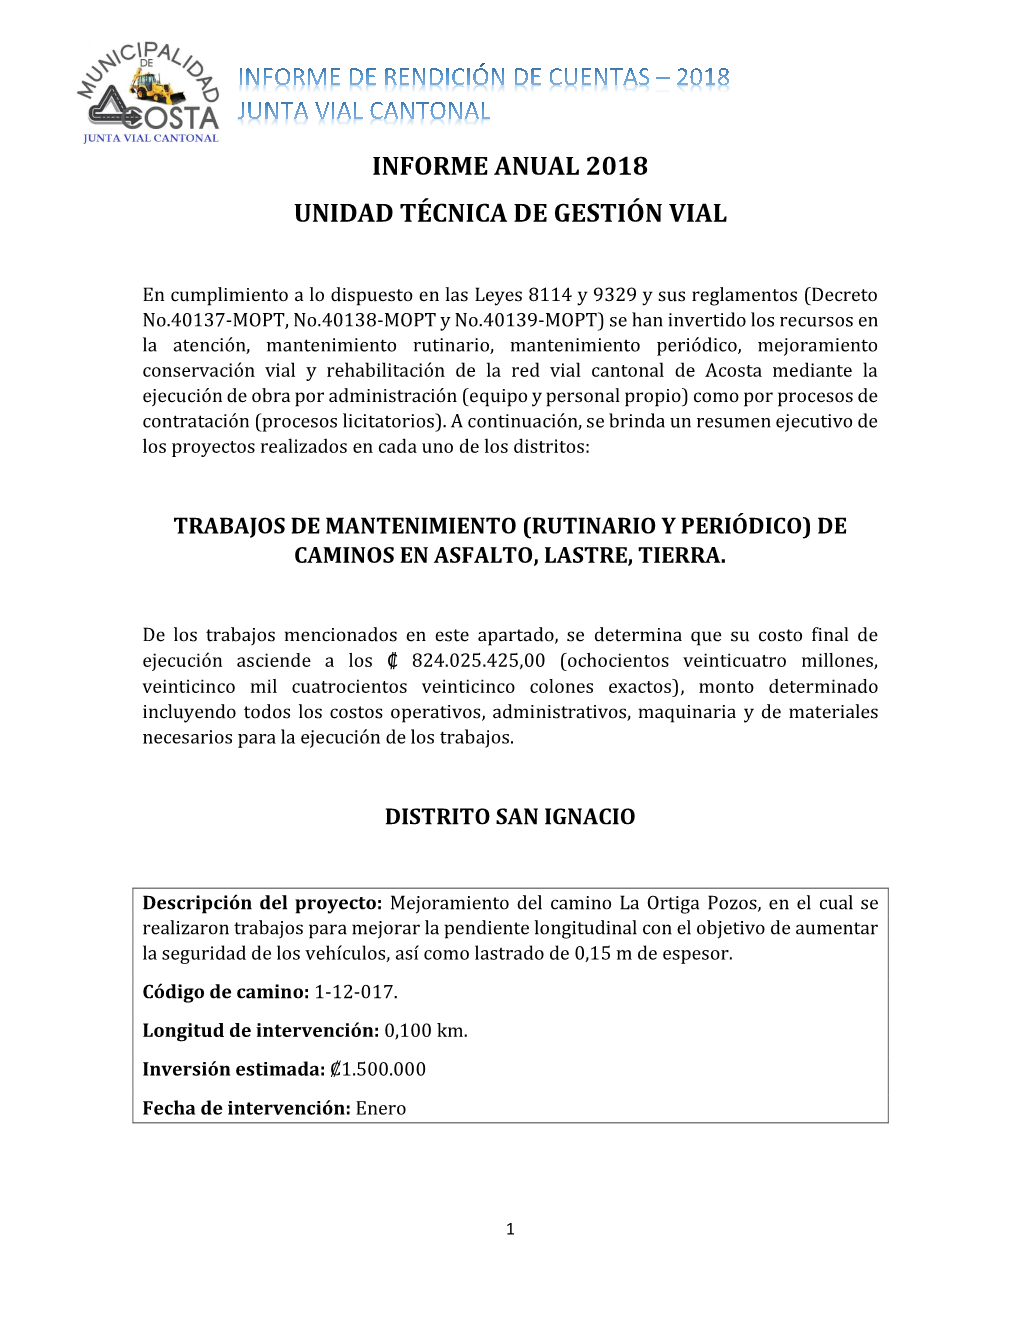 Informe De Rendición De Cuentas UTGVM-2018